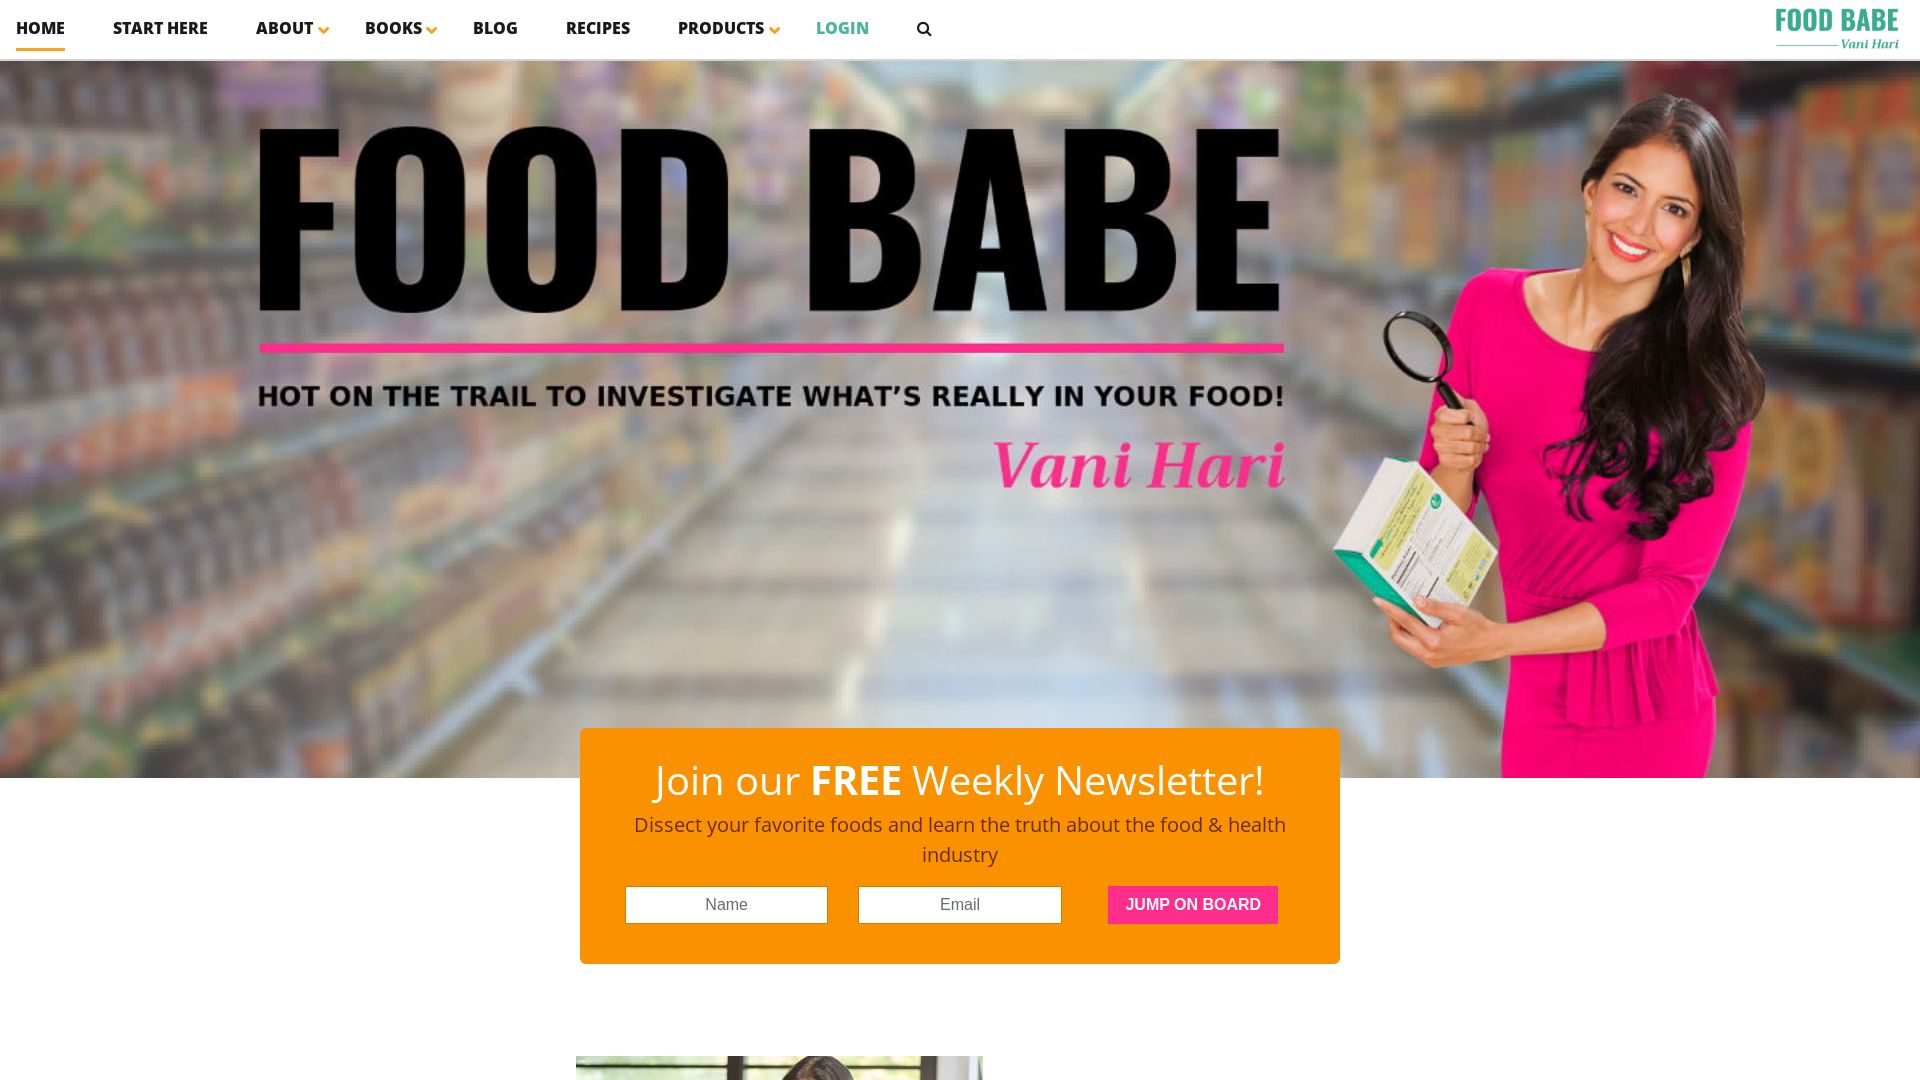 Stato del sito web foodbabe.com è   ONLINE